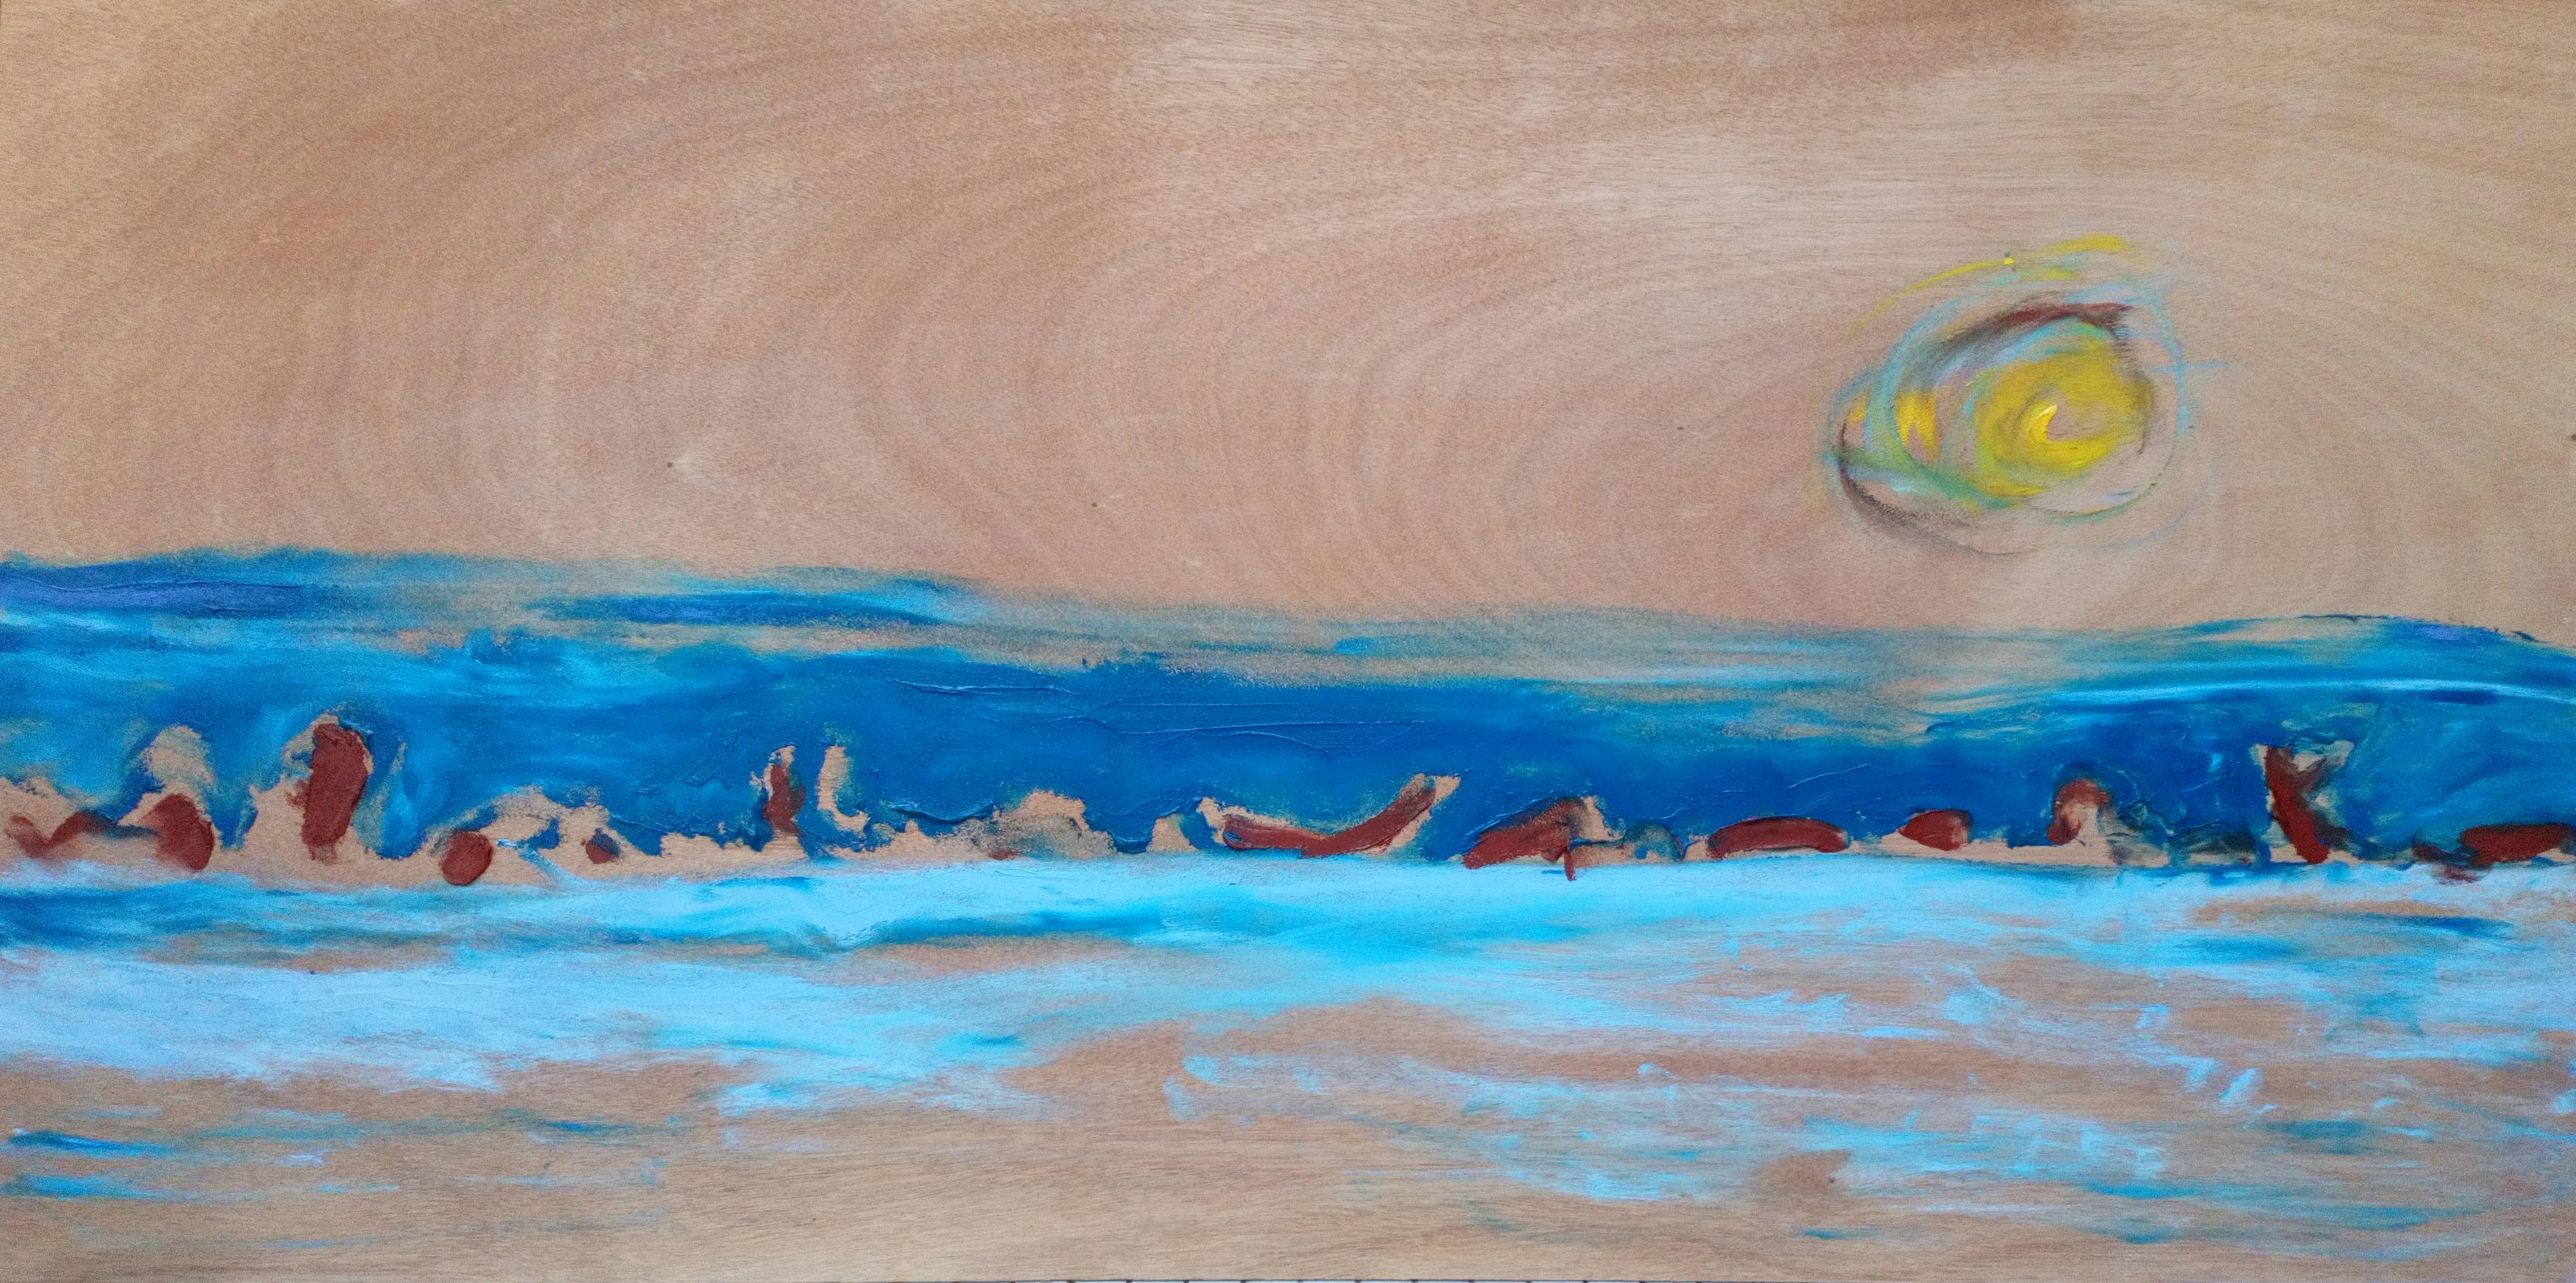 Sanduhr Nicolas Kennett Zeitgenössisches Gemälde, Naturlandschaft, Tier, blaues Meer